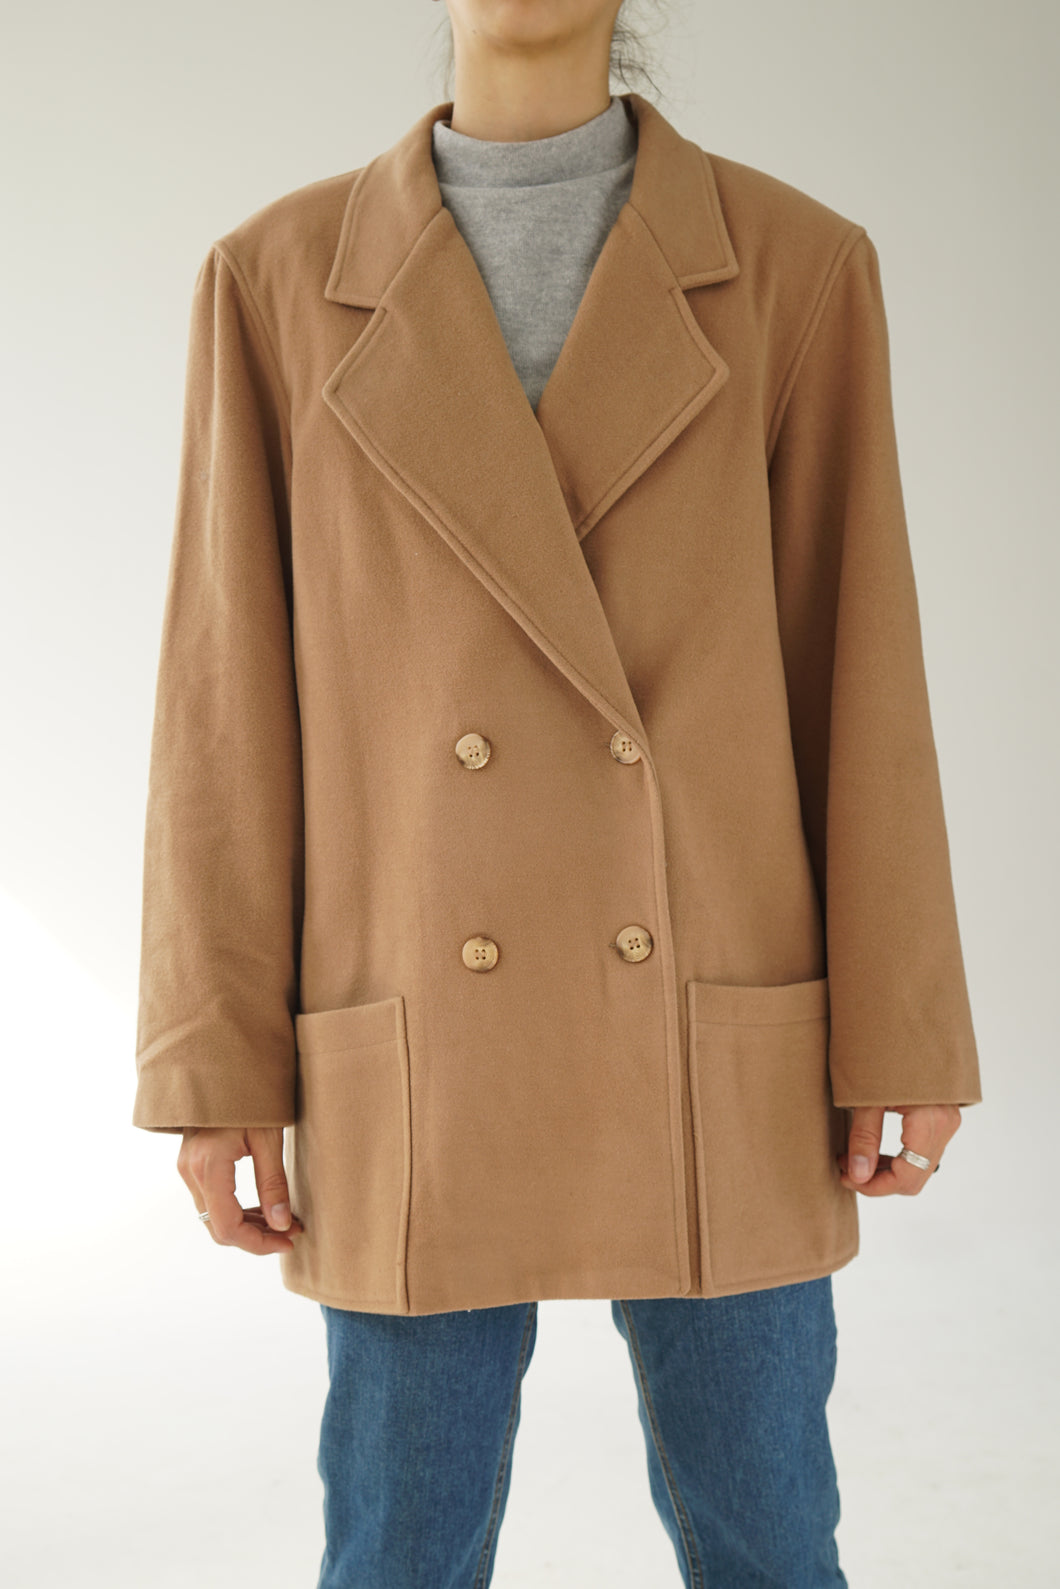 Manteau vintage de laine et cachemire marque française La redoute